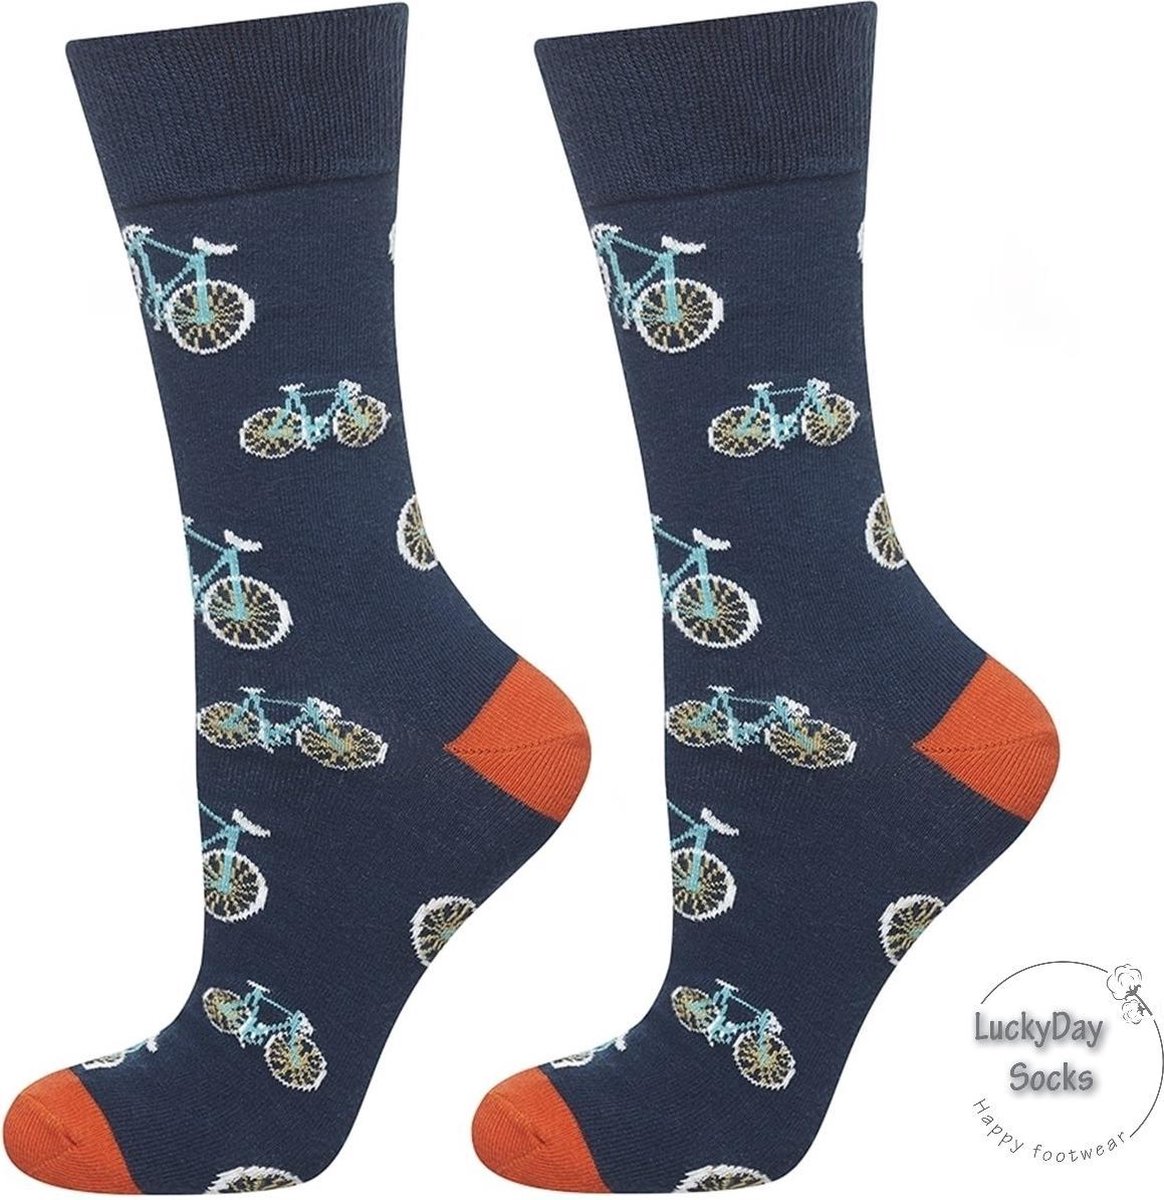 Gezellige sokken in het donkerblauw met wit afgebeelde fietsen.